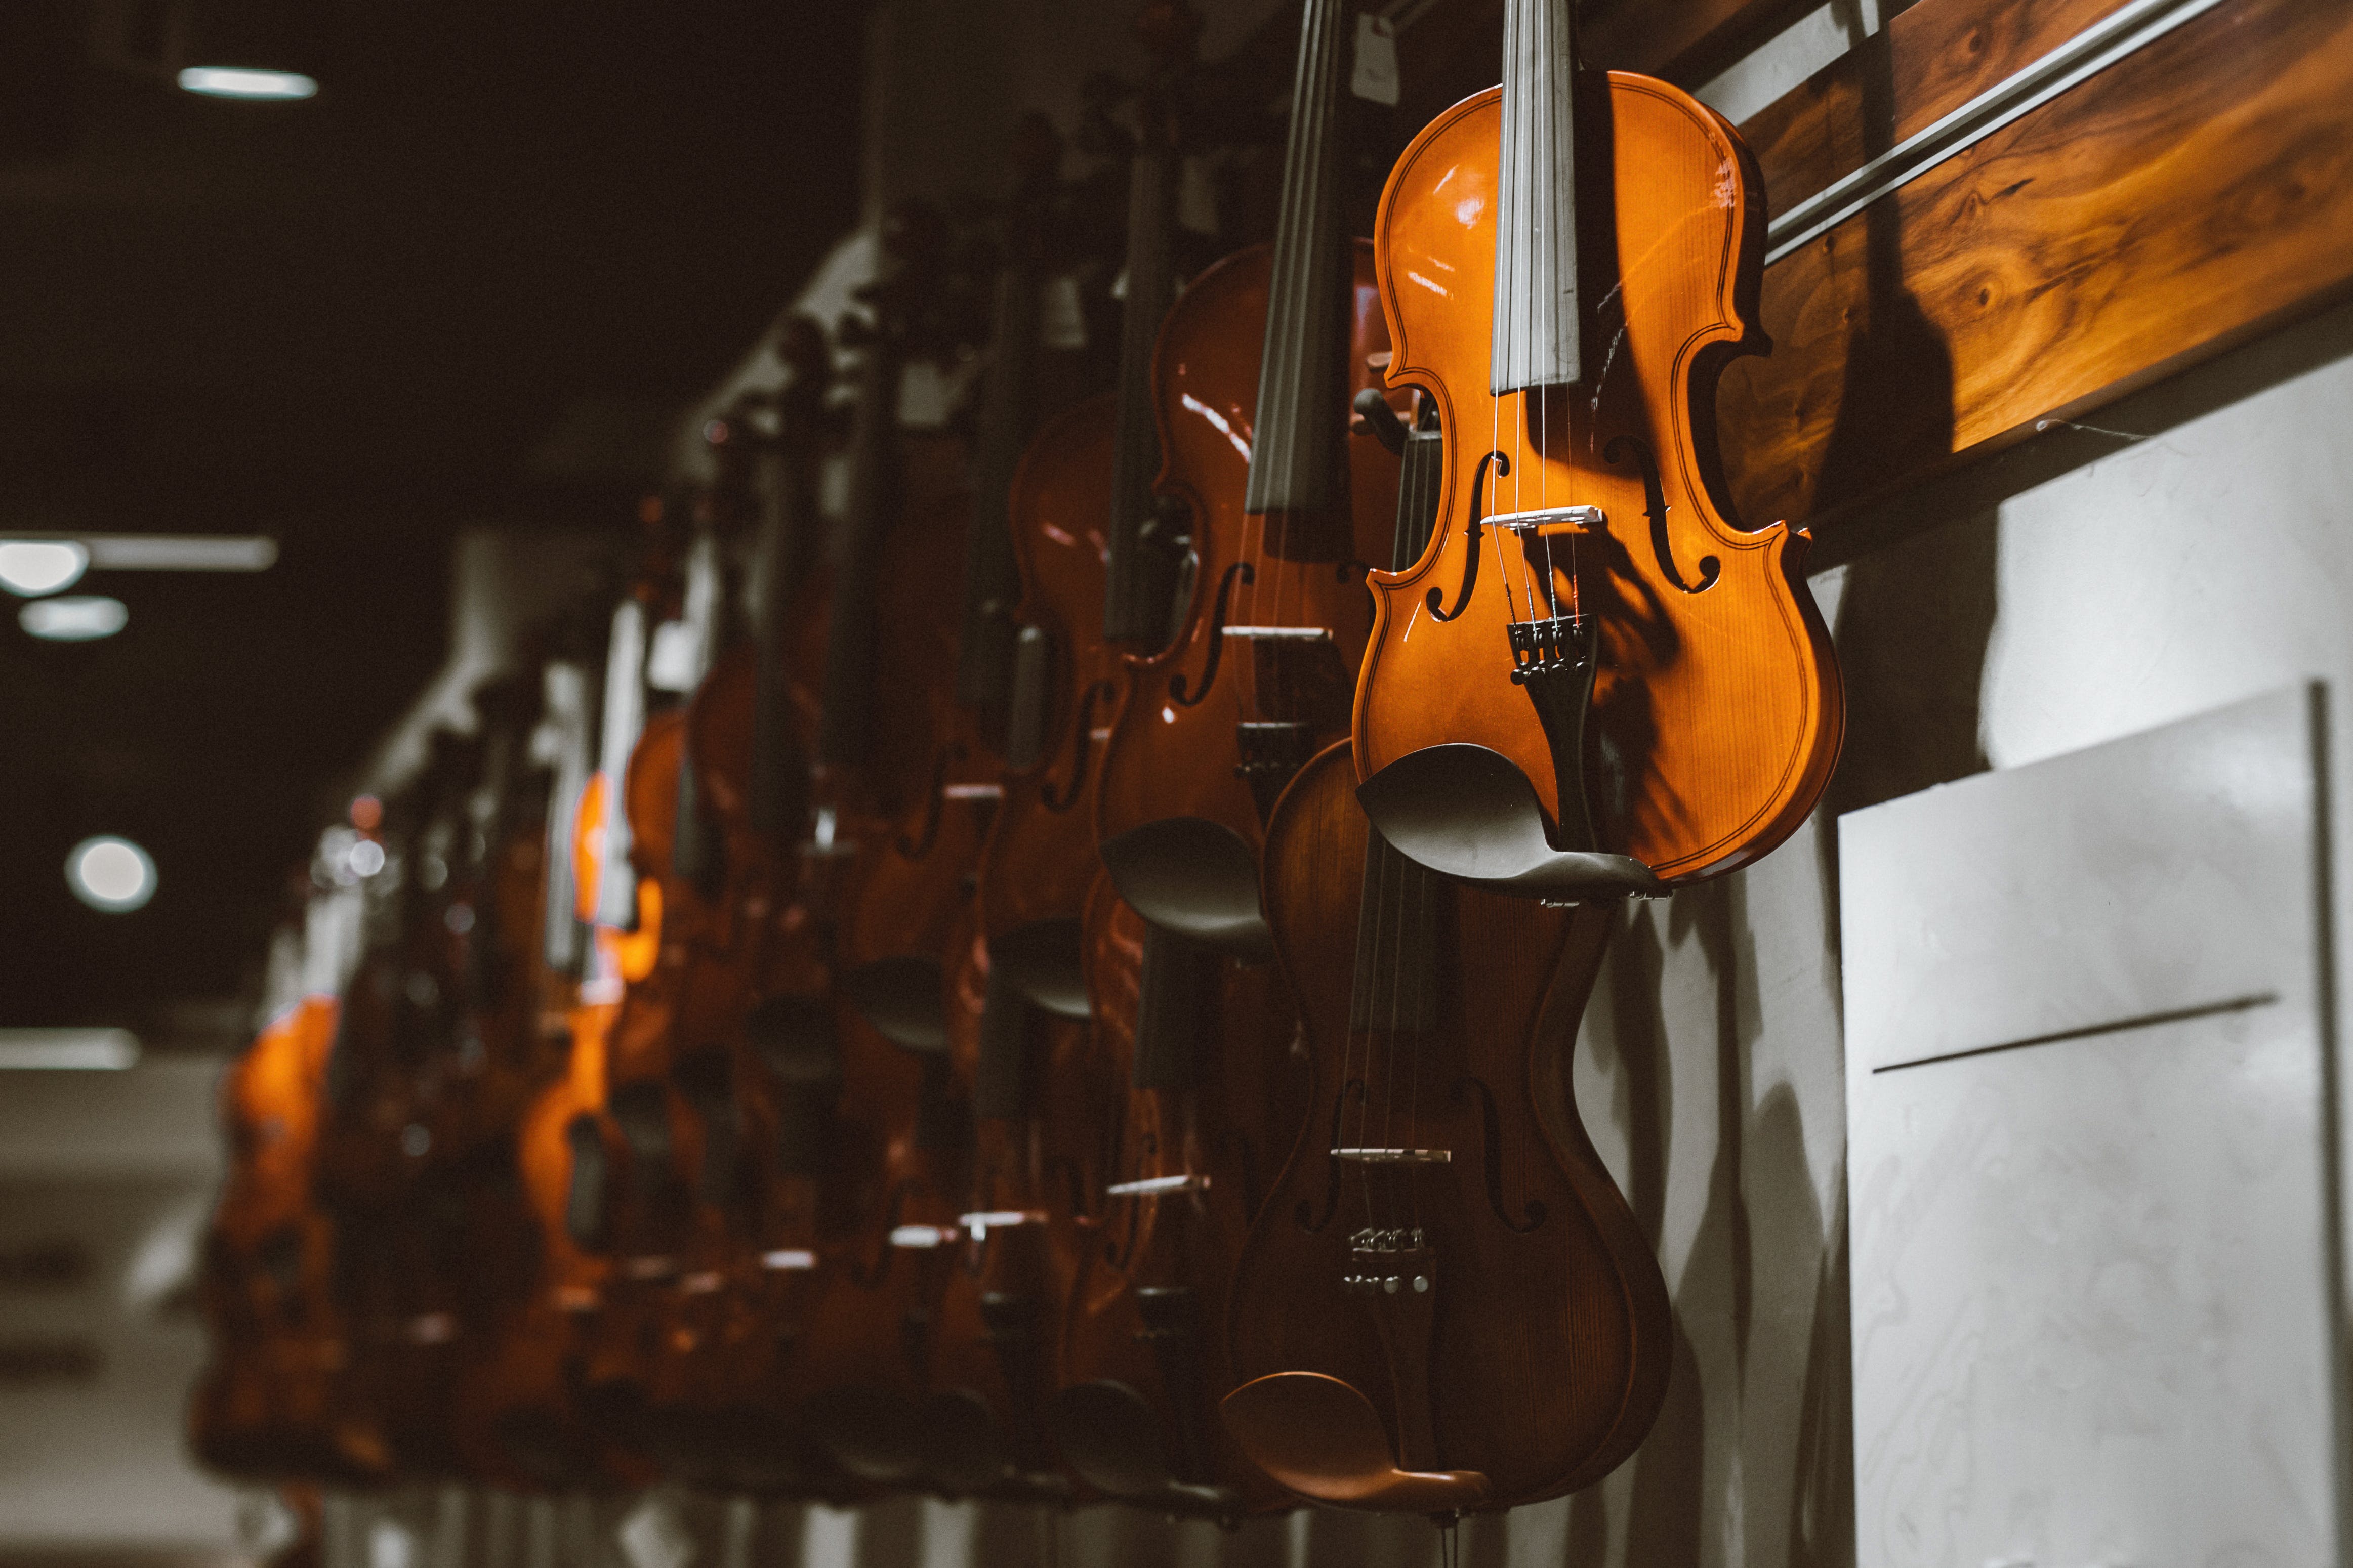 Violine za glasbeni team building program